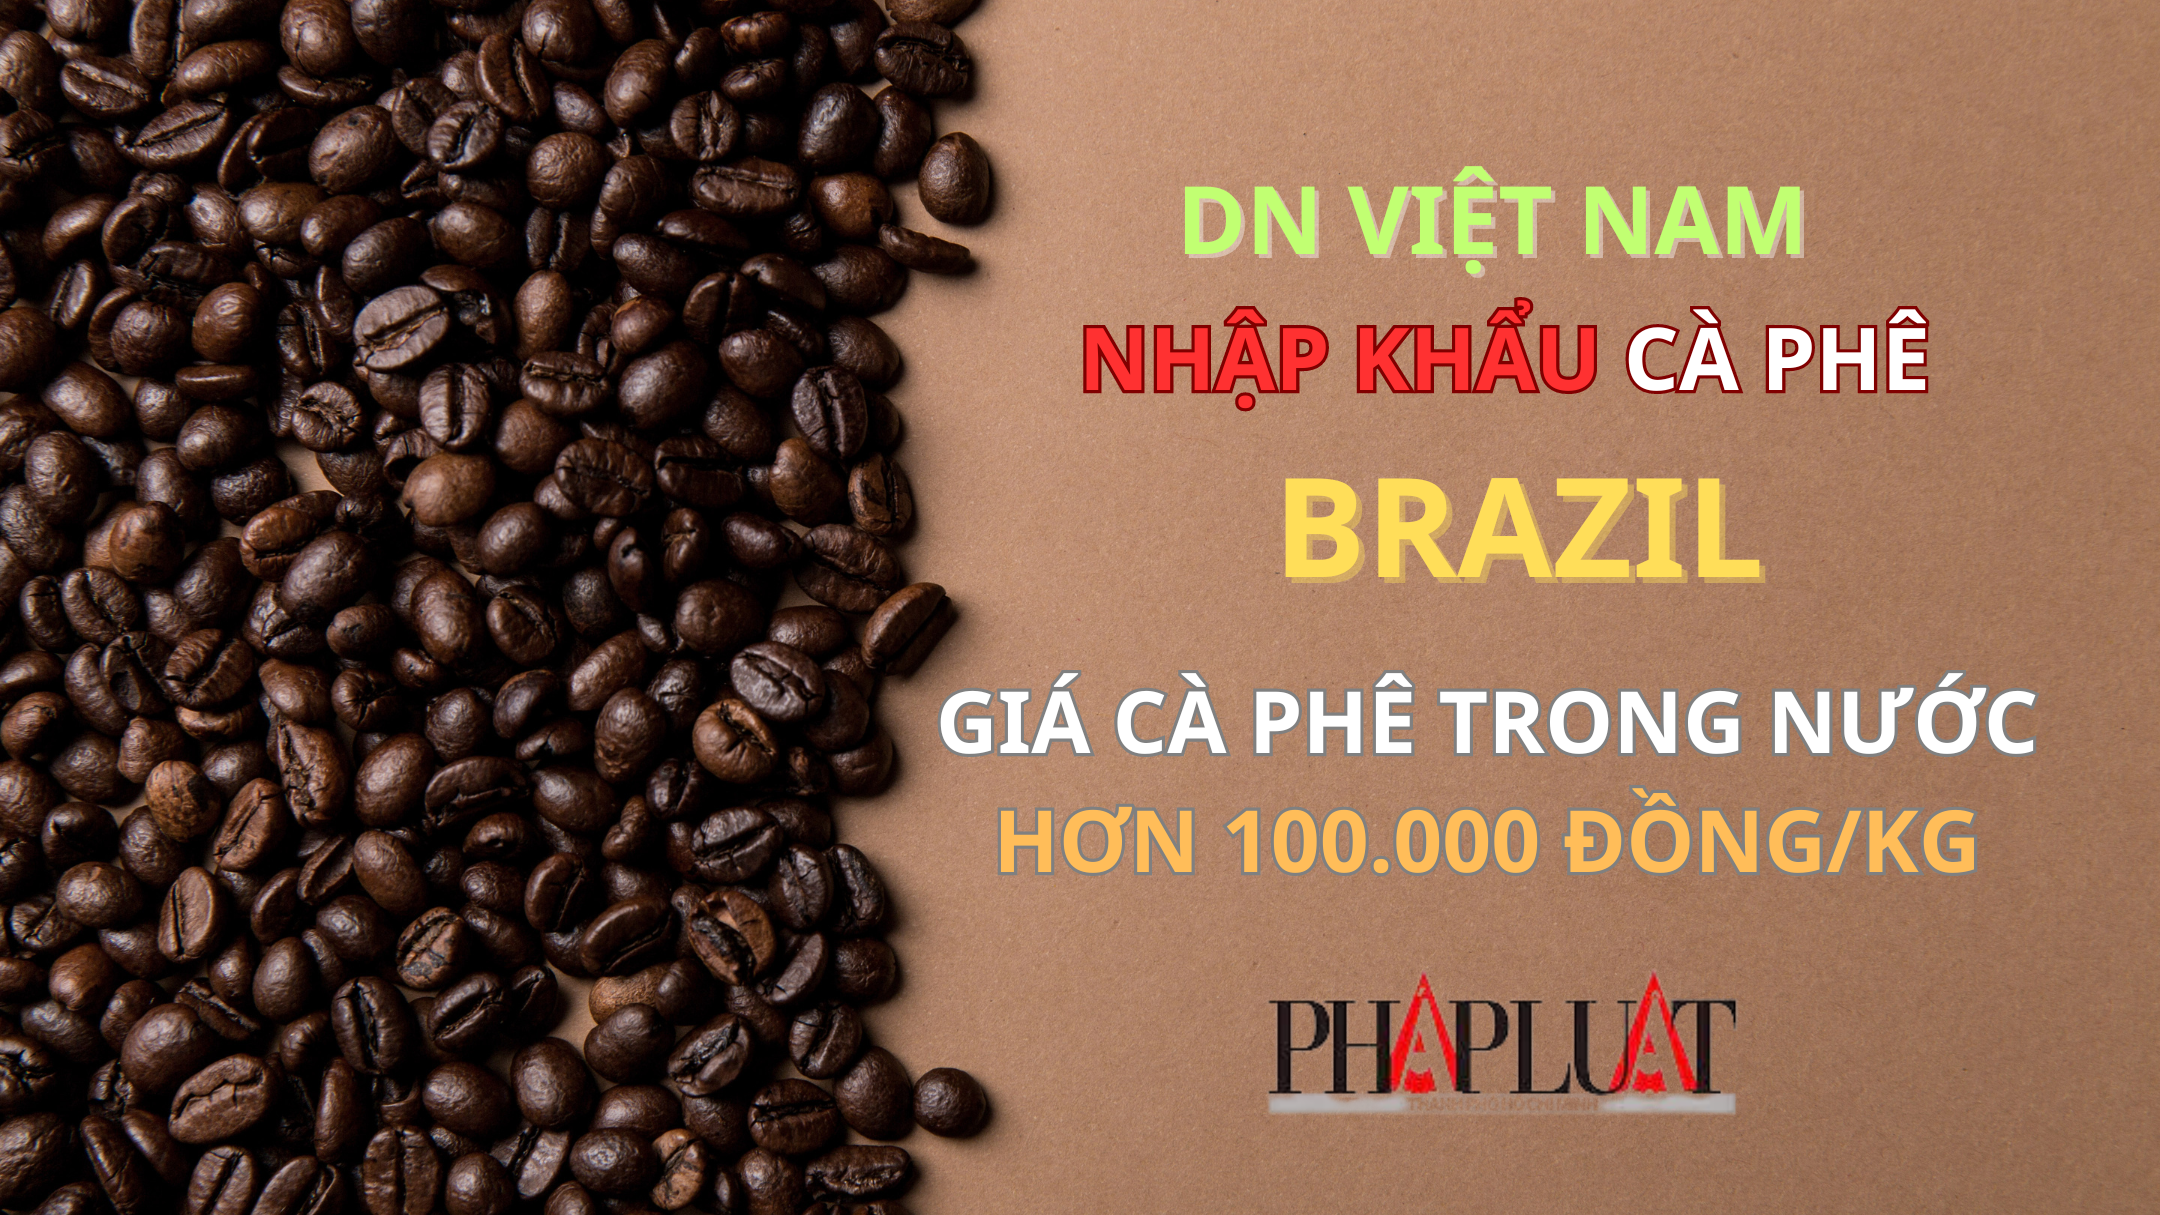 Giá cà phê Việt hơn 100.000 đồng/kg, doanh nghiệp phải tìm mua cà phê Brazil